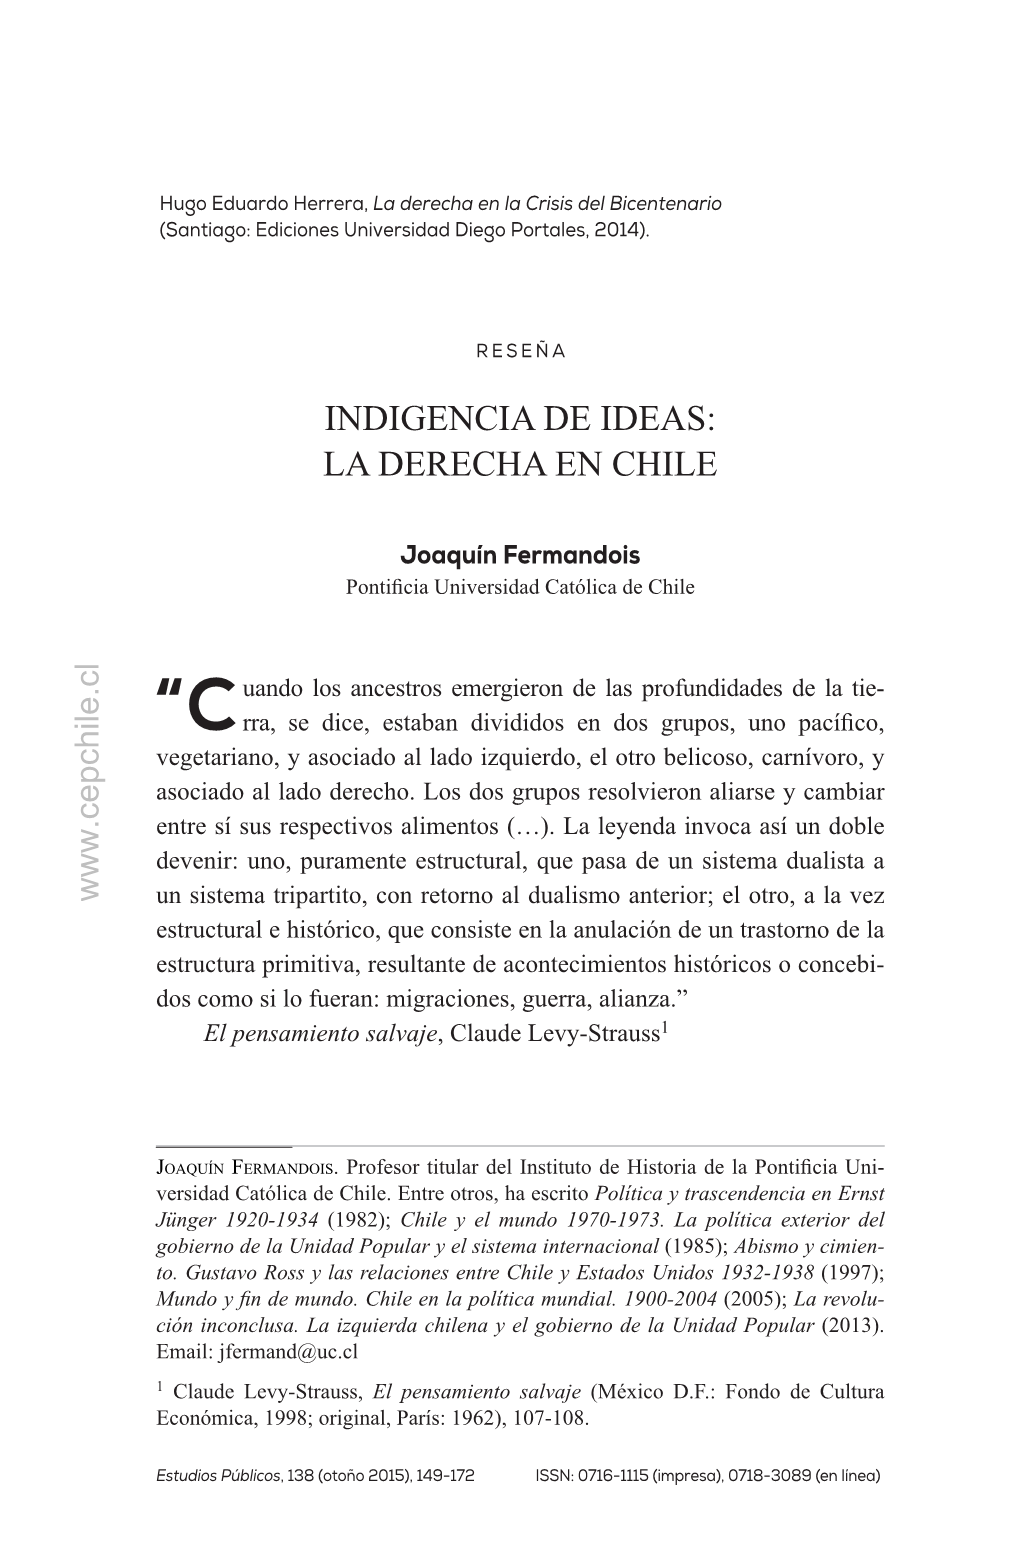 Estudios Públicos, 138. Revista De Políticas Públicas